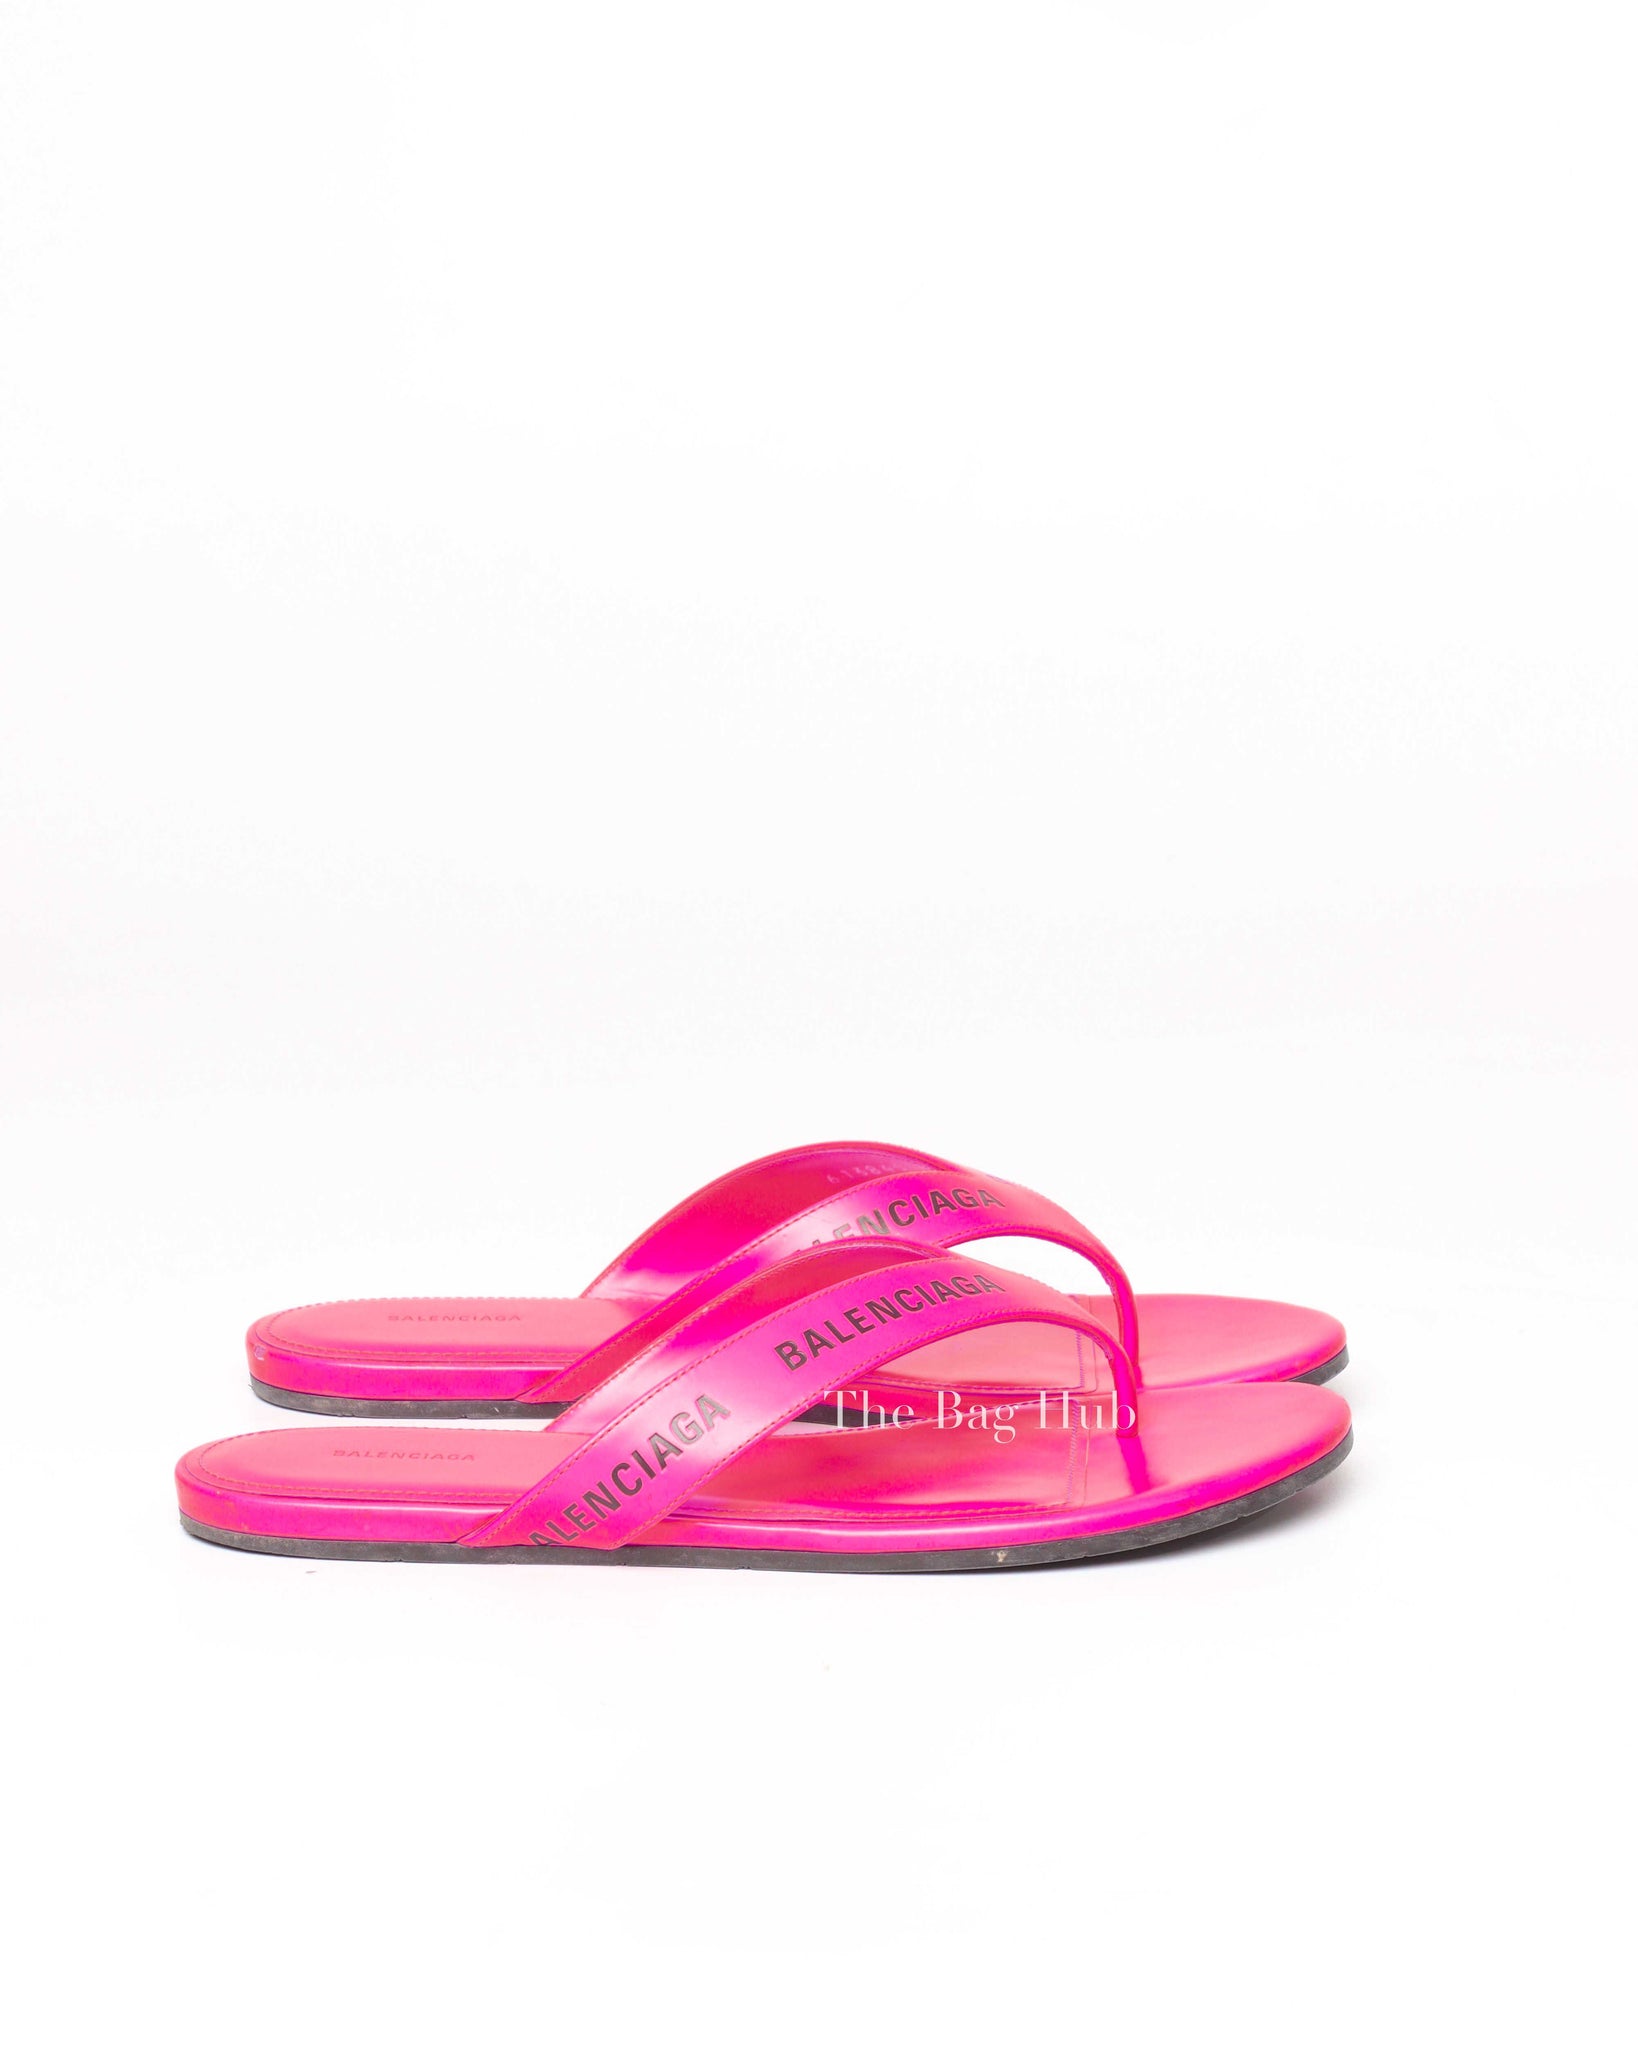 Balenciaga Neon Pink Logo Flip Flops Size 37-5